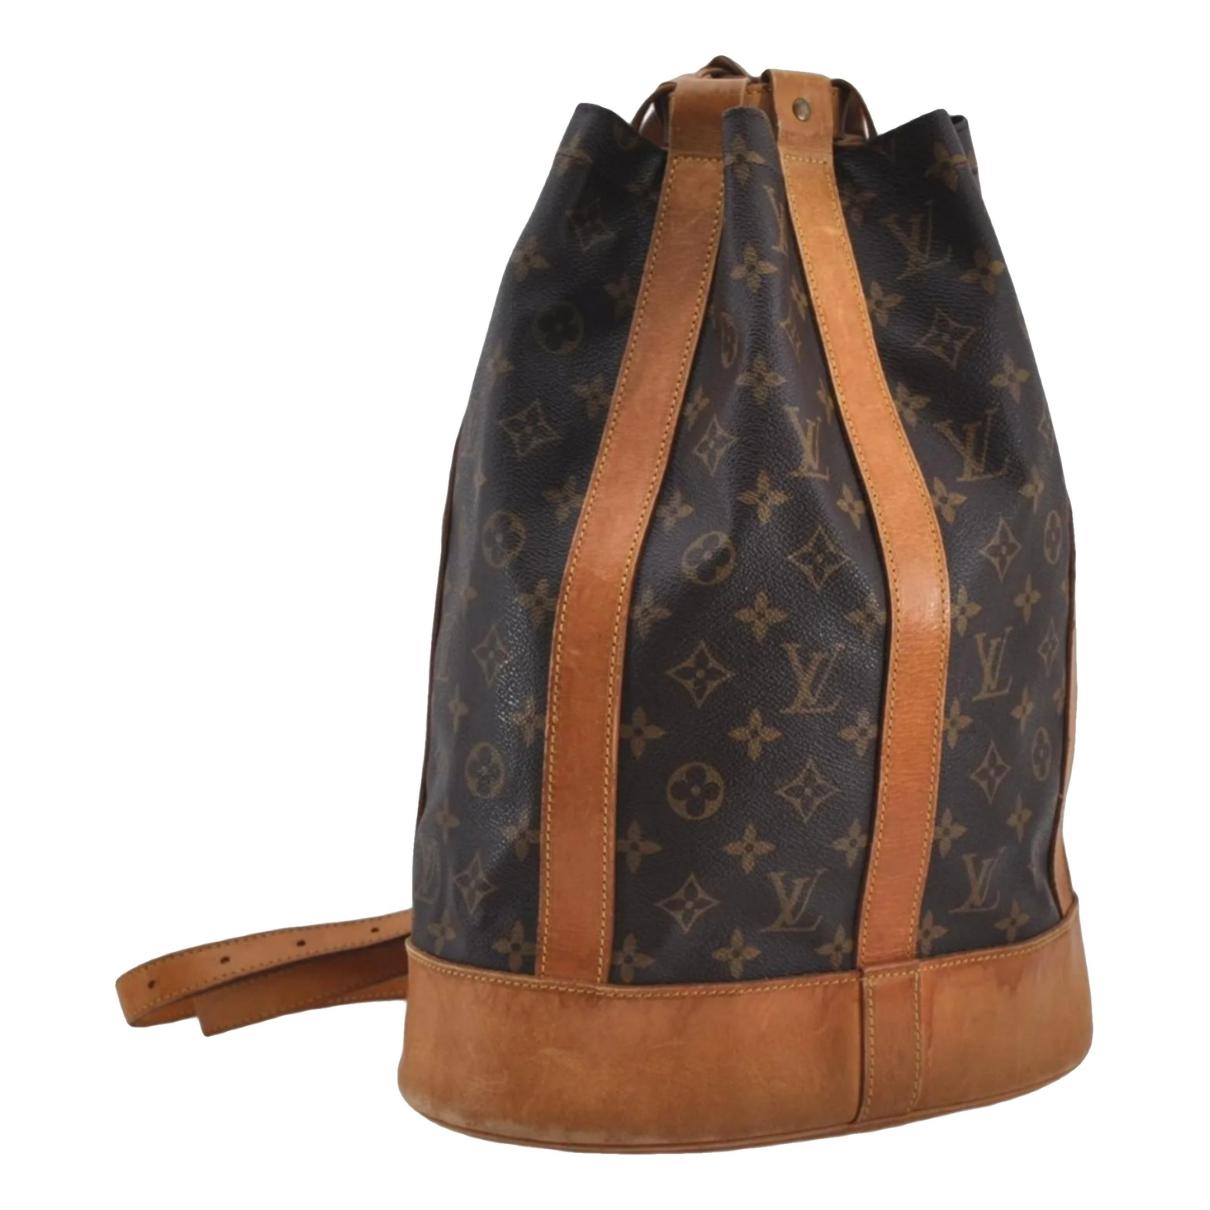 Louis Vuitton Randonnée Backpack 337289